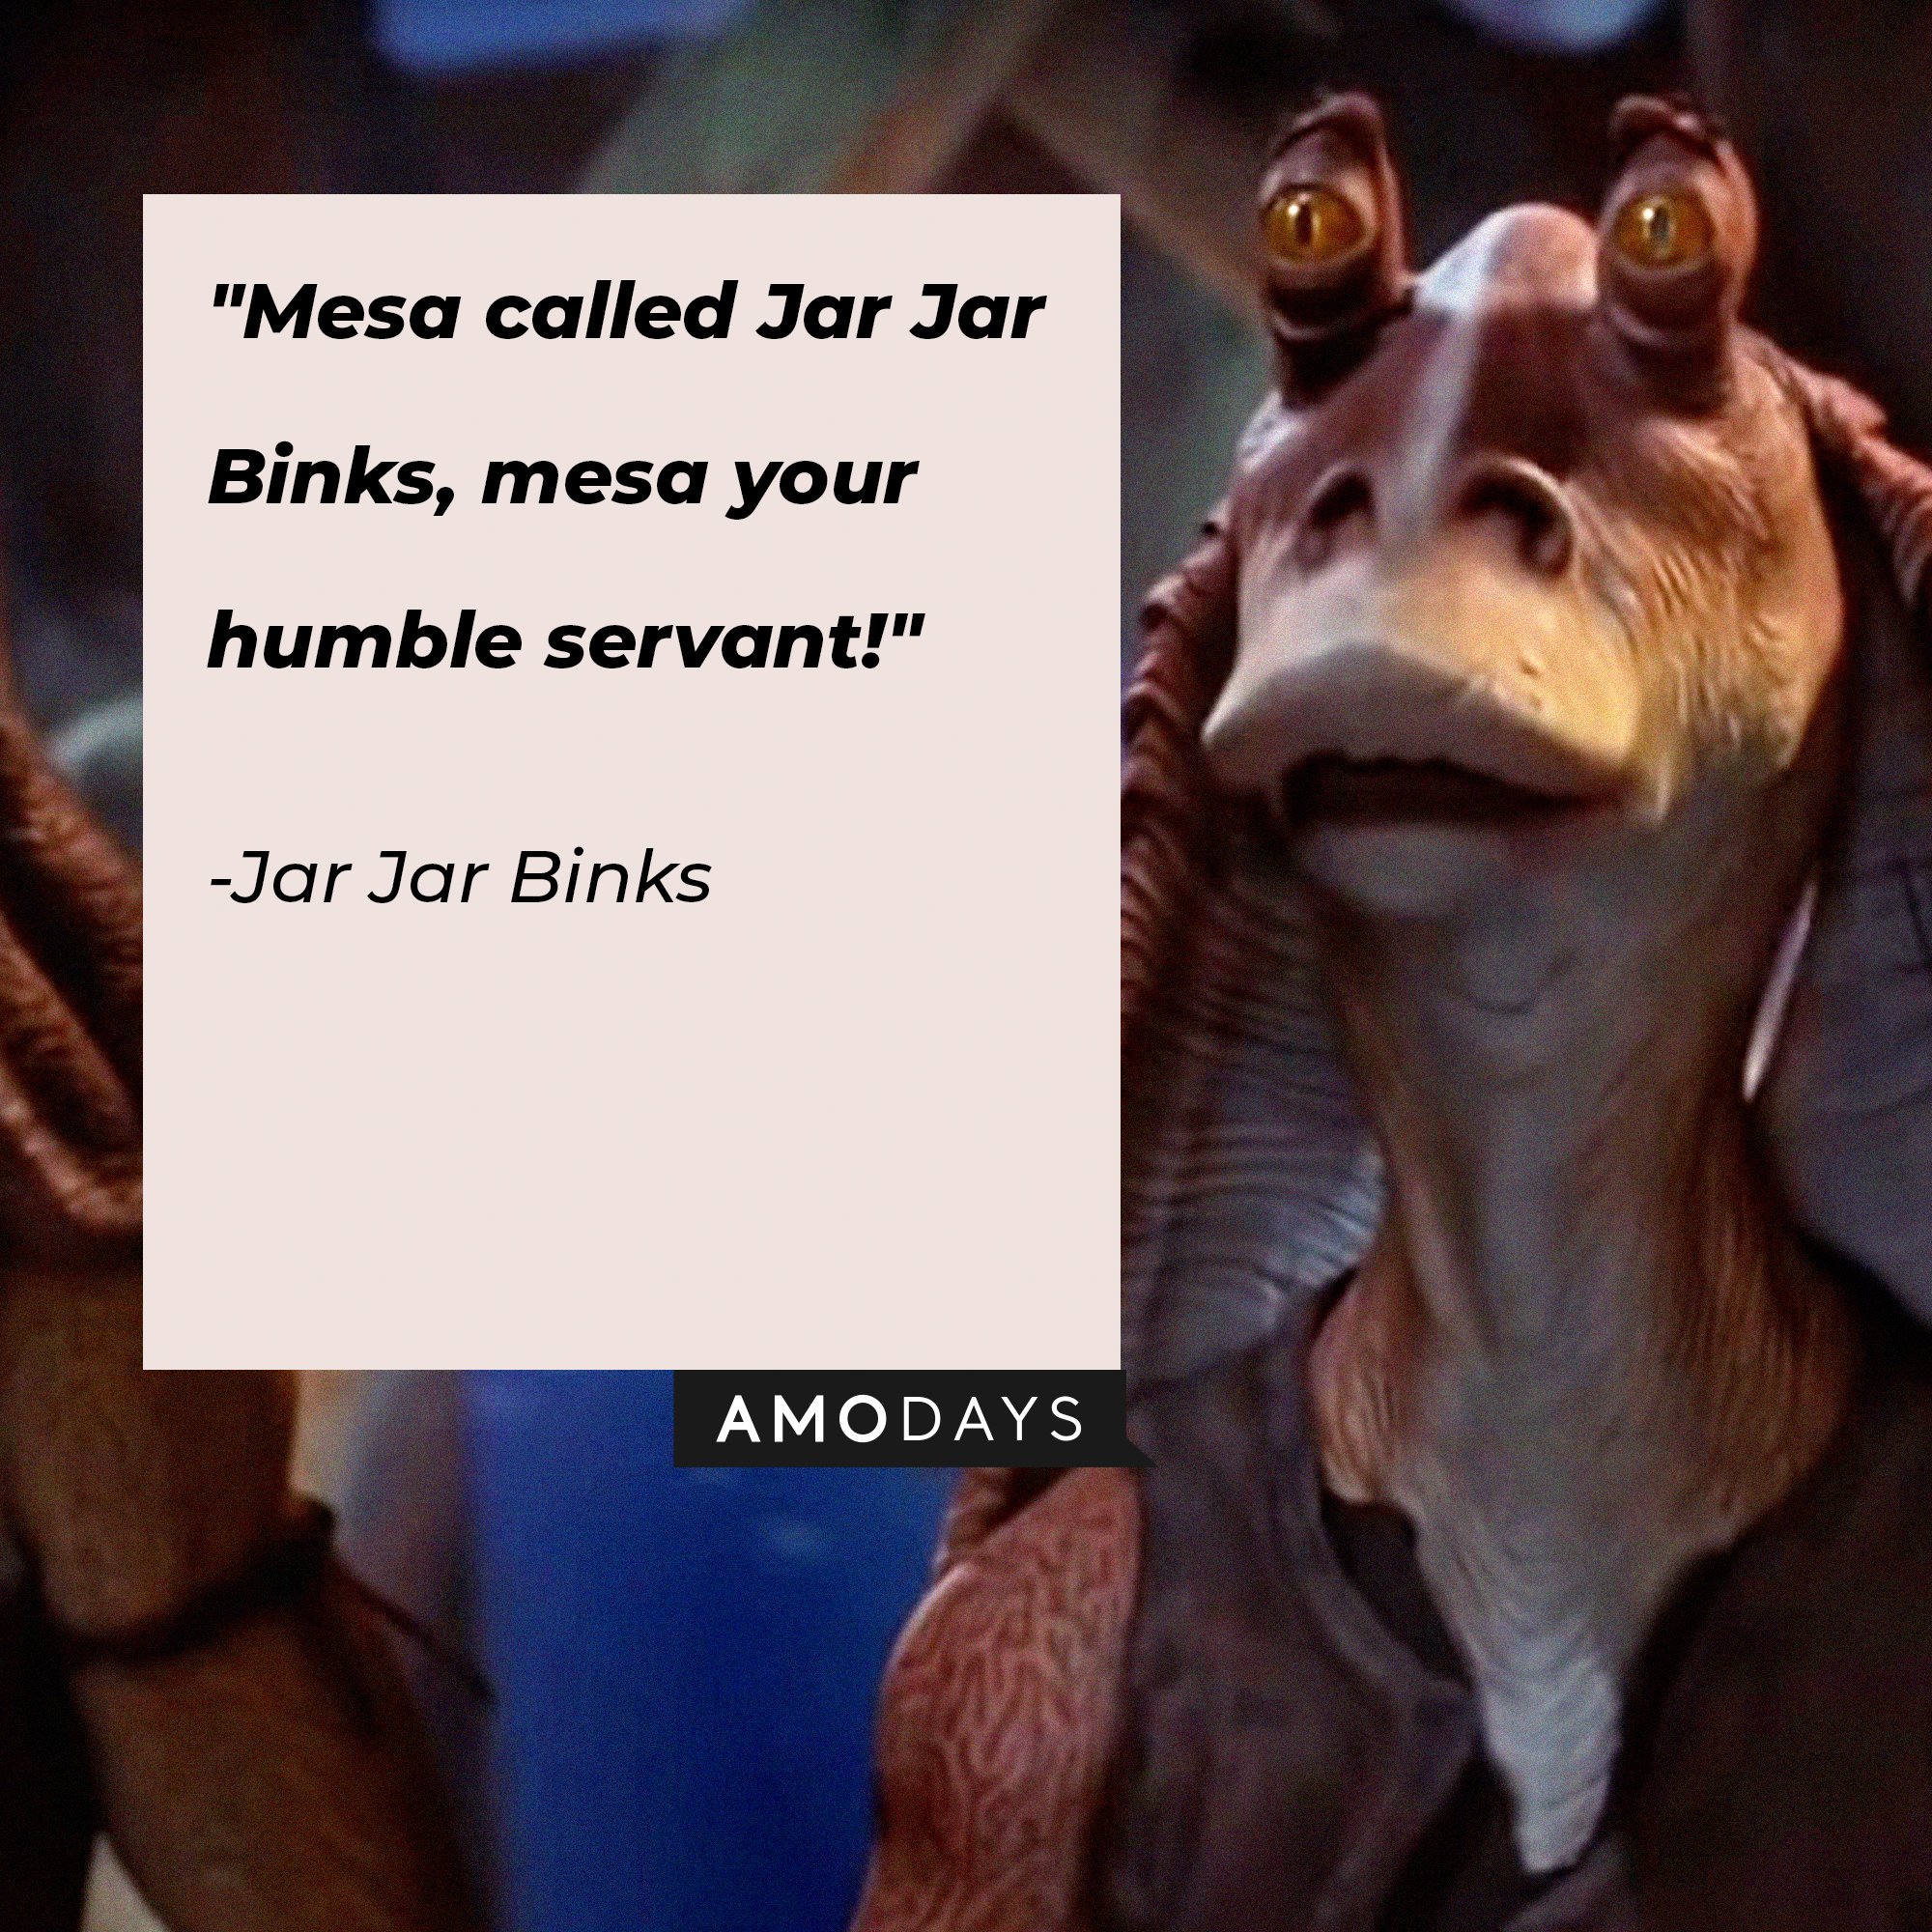  Jar Jar Binks’ quote: "Mesa called Jar Jar Binks, mesa your humble servant!"  | Image: AmoDays